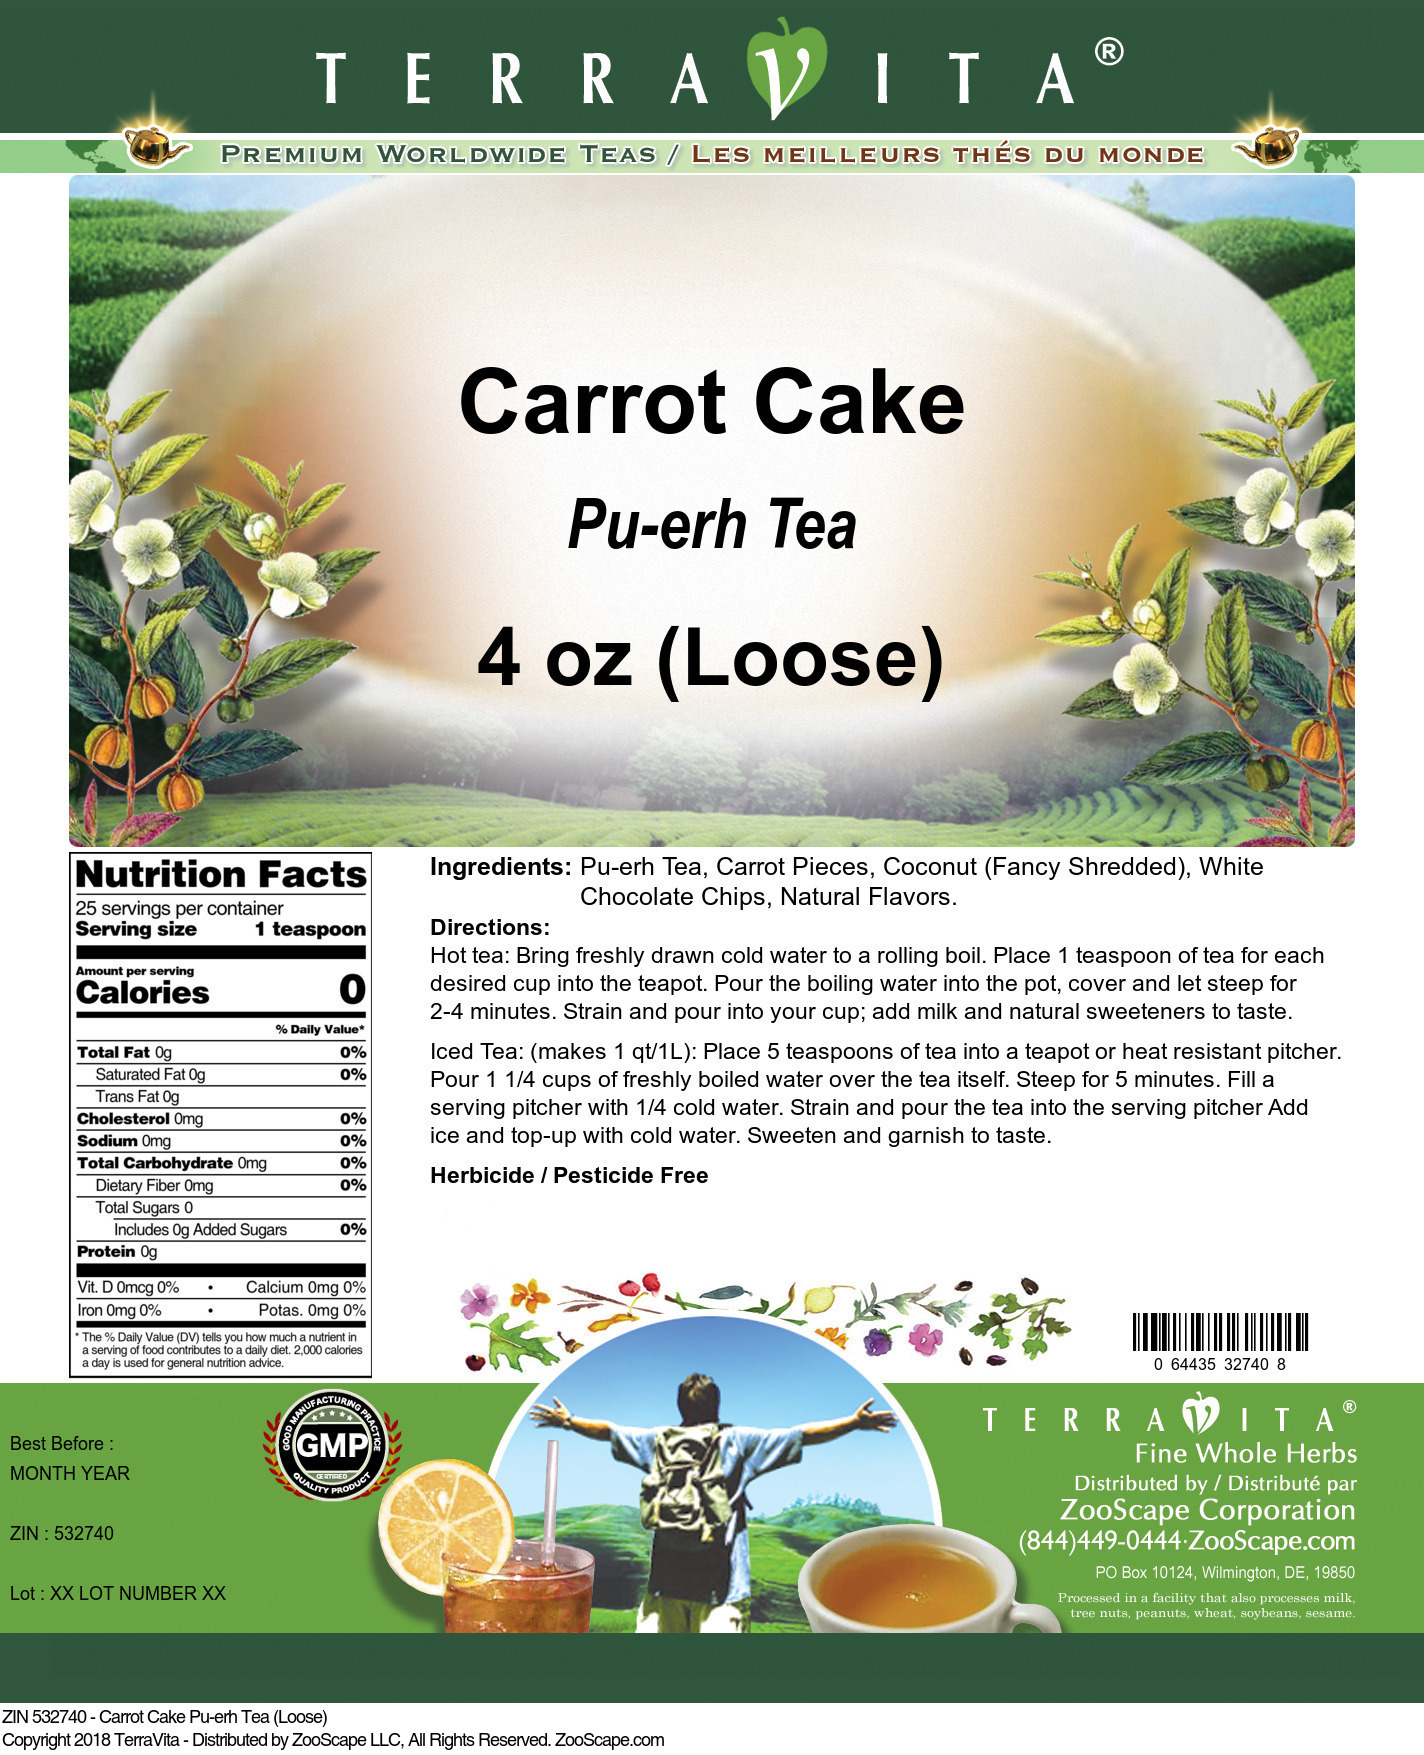 Carrot Cake Pu-erh Tea (Loose) - Label